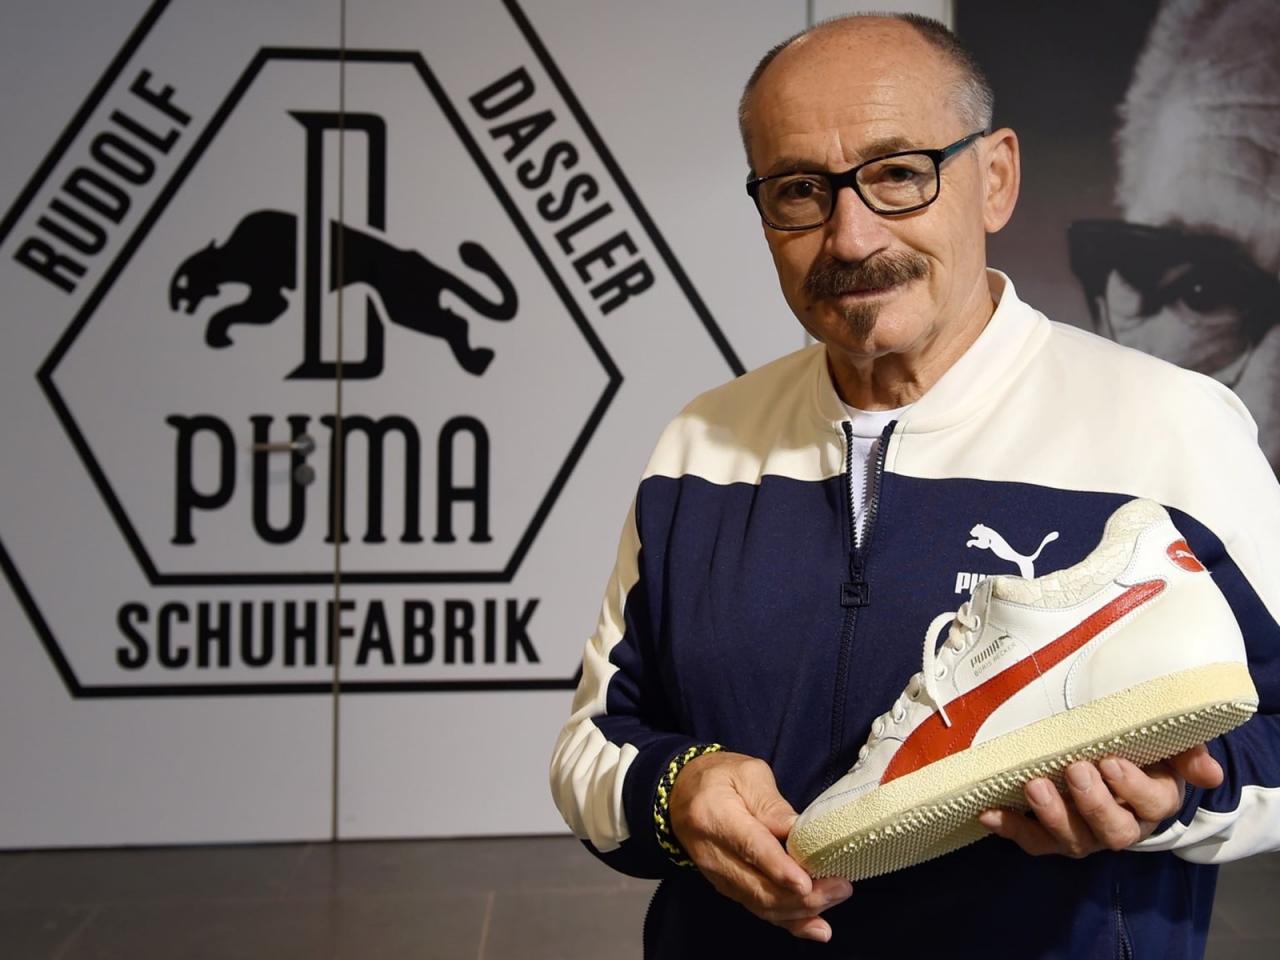 Helmut Fischer presenting a PUMA sneaker